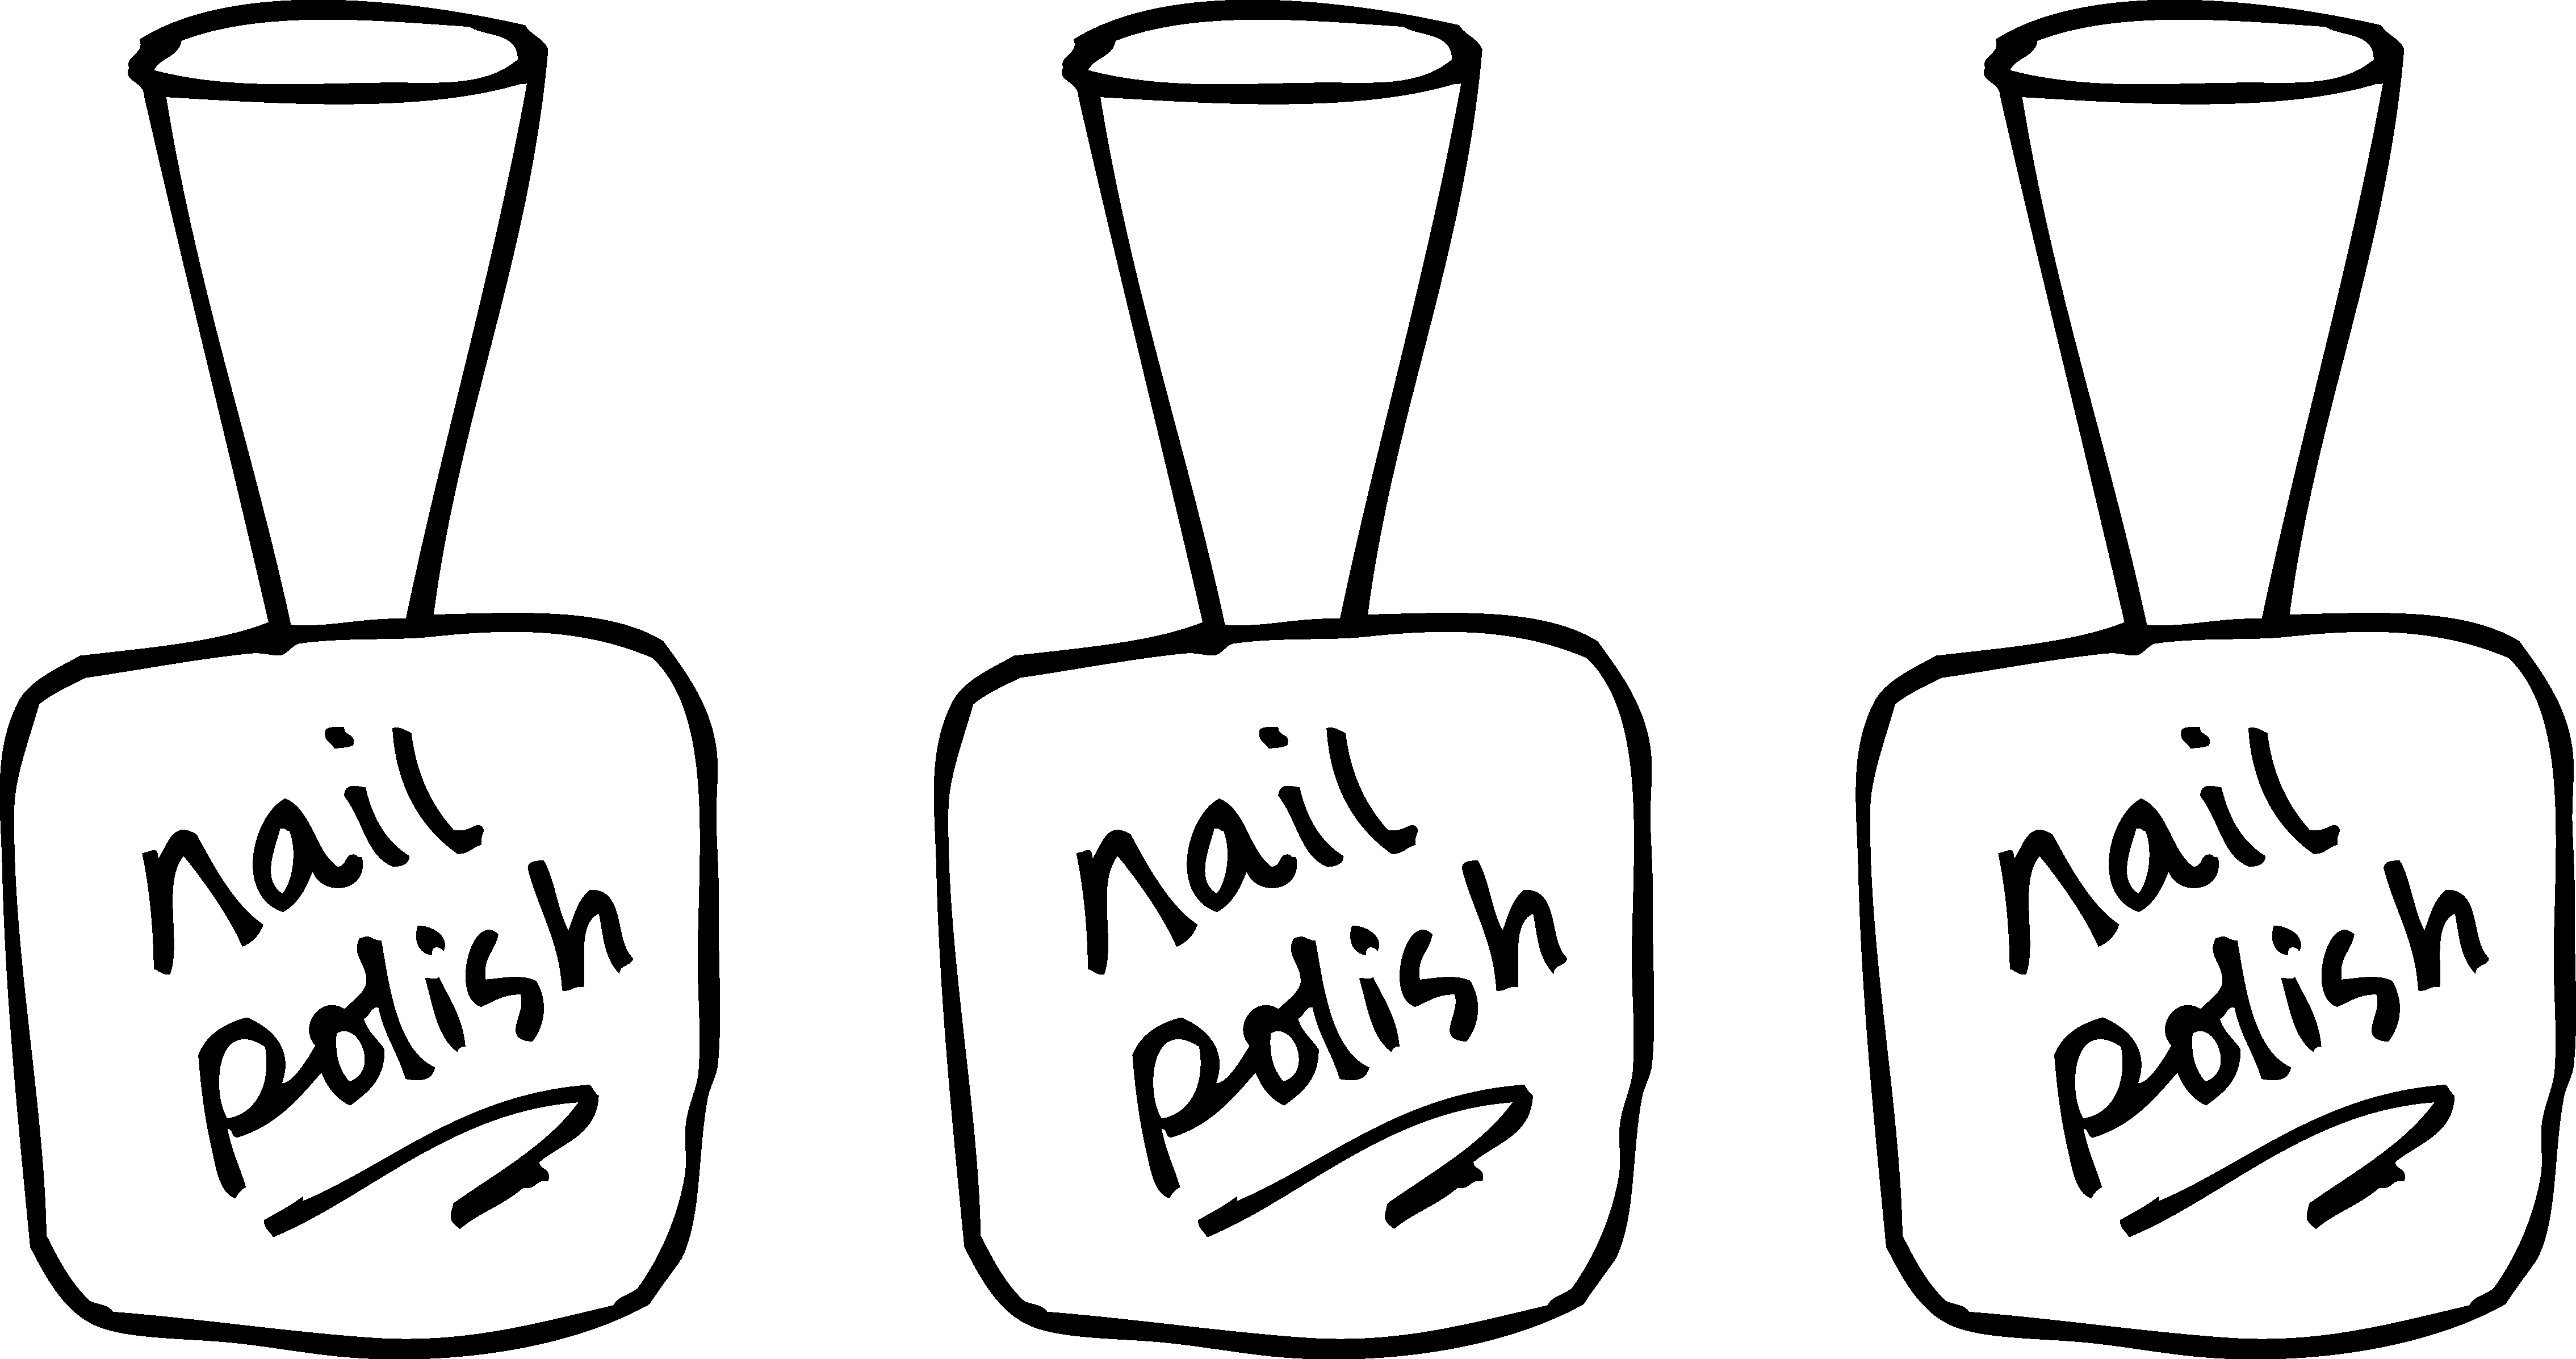 Nail polish coloring page. Haircut clipart black and white